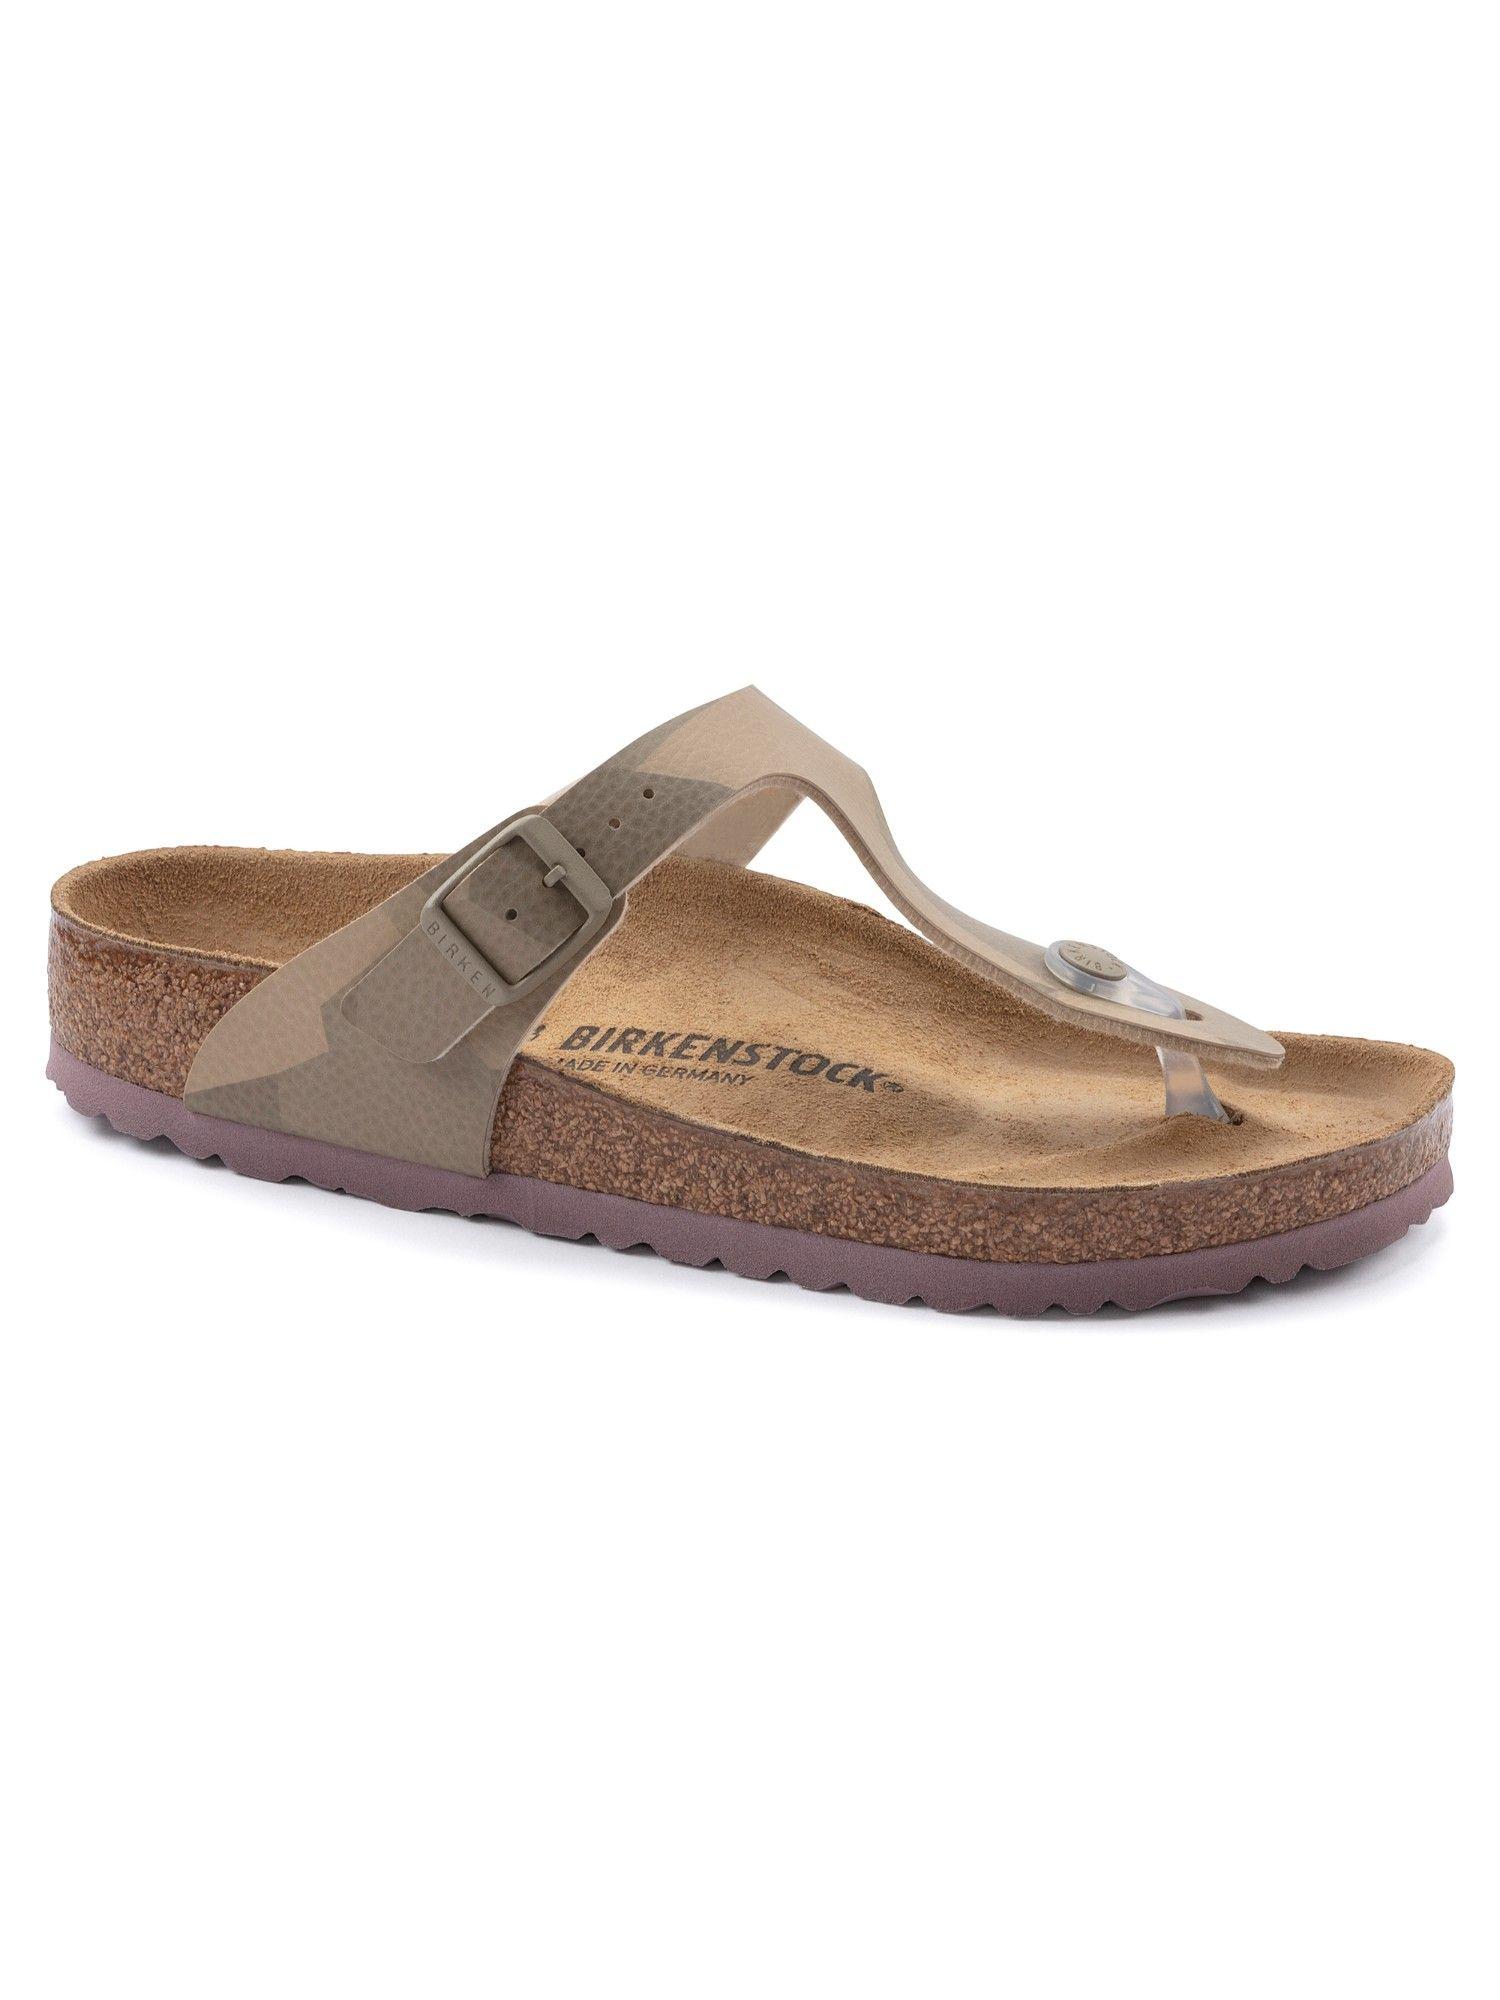 Gizeh Desert Soil Geo Camo Beige Regular Width Unisex Thong Sandals